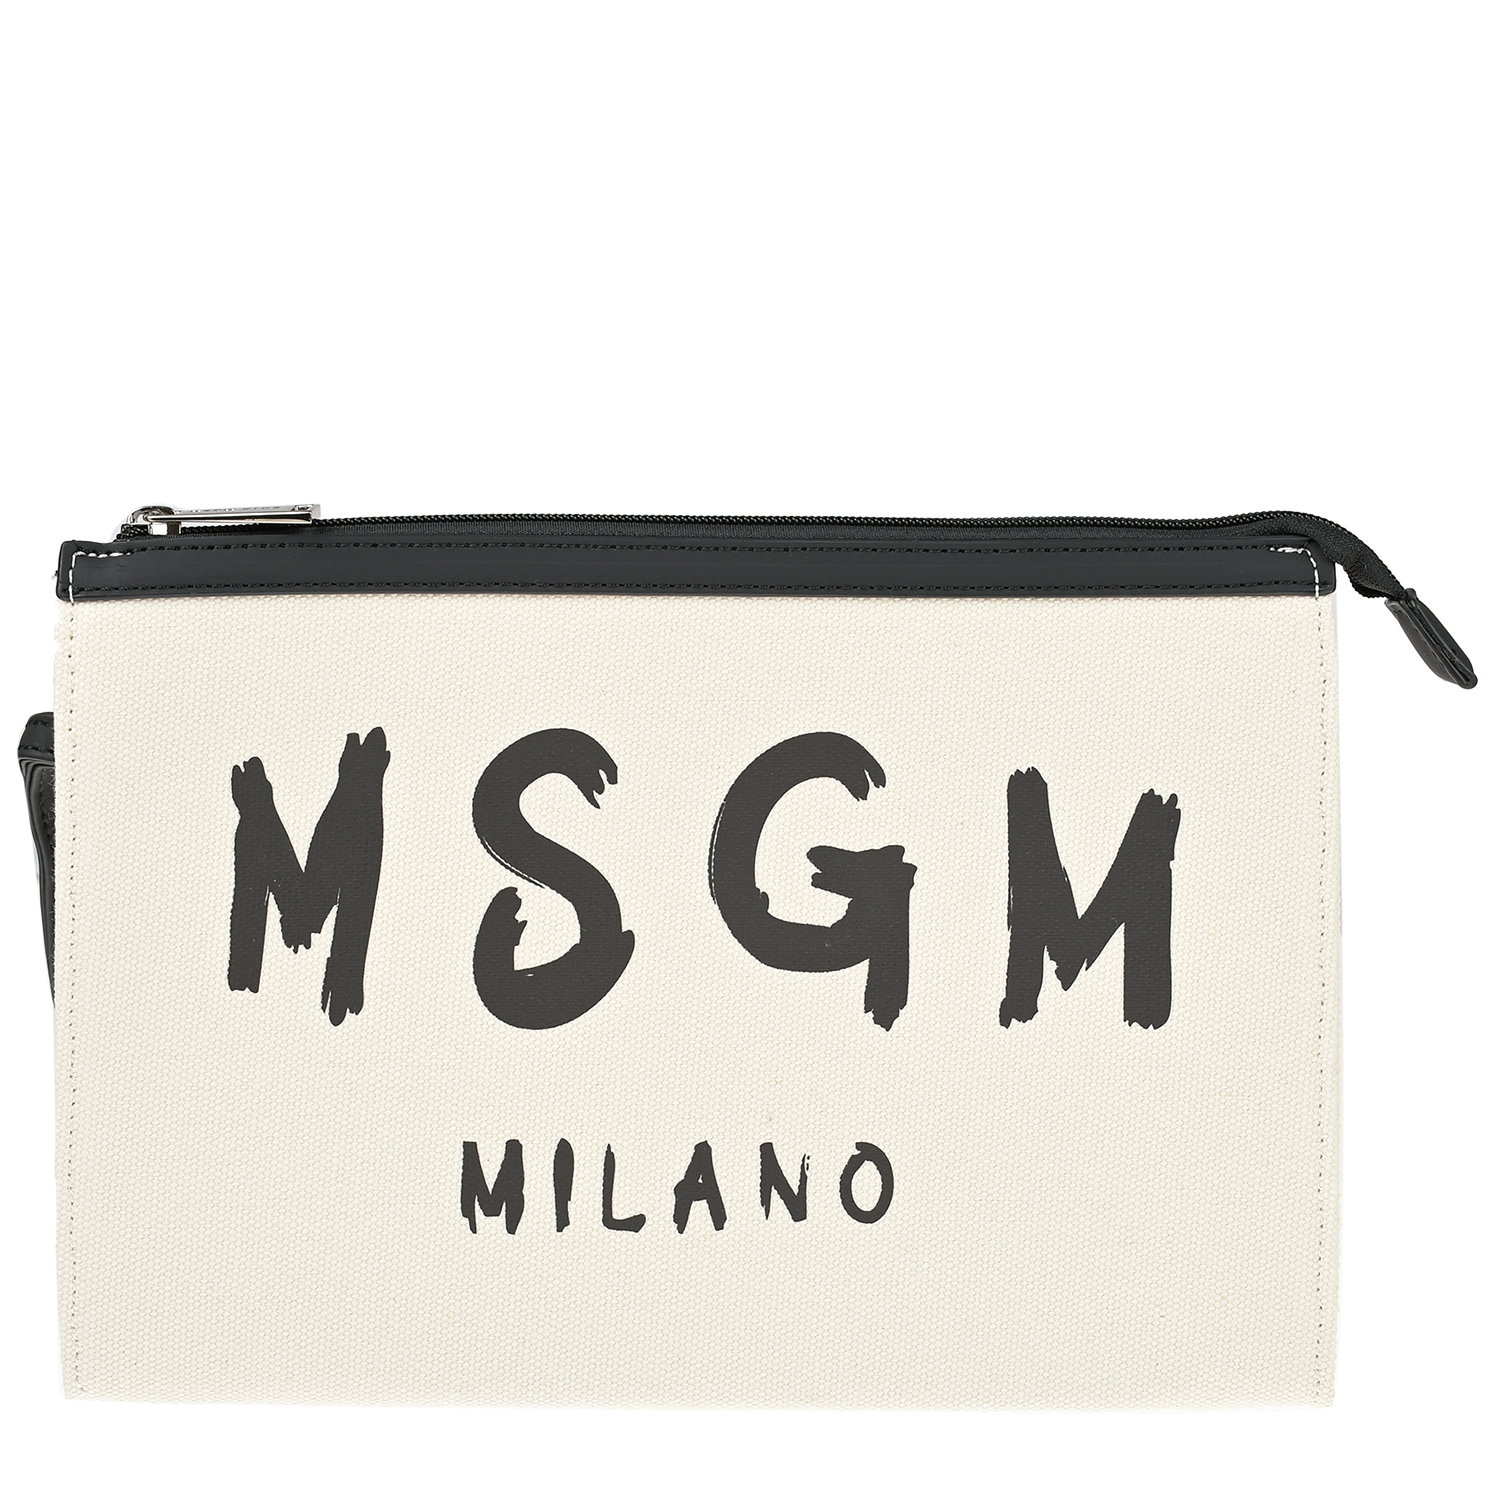 Сумка-косметичка с черным лого MSGM, размер unica, цвет мультиколор